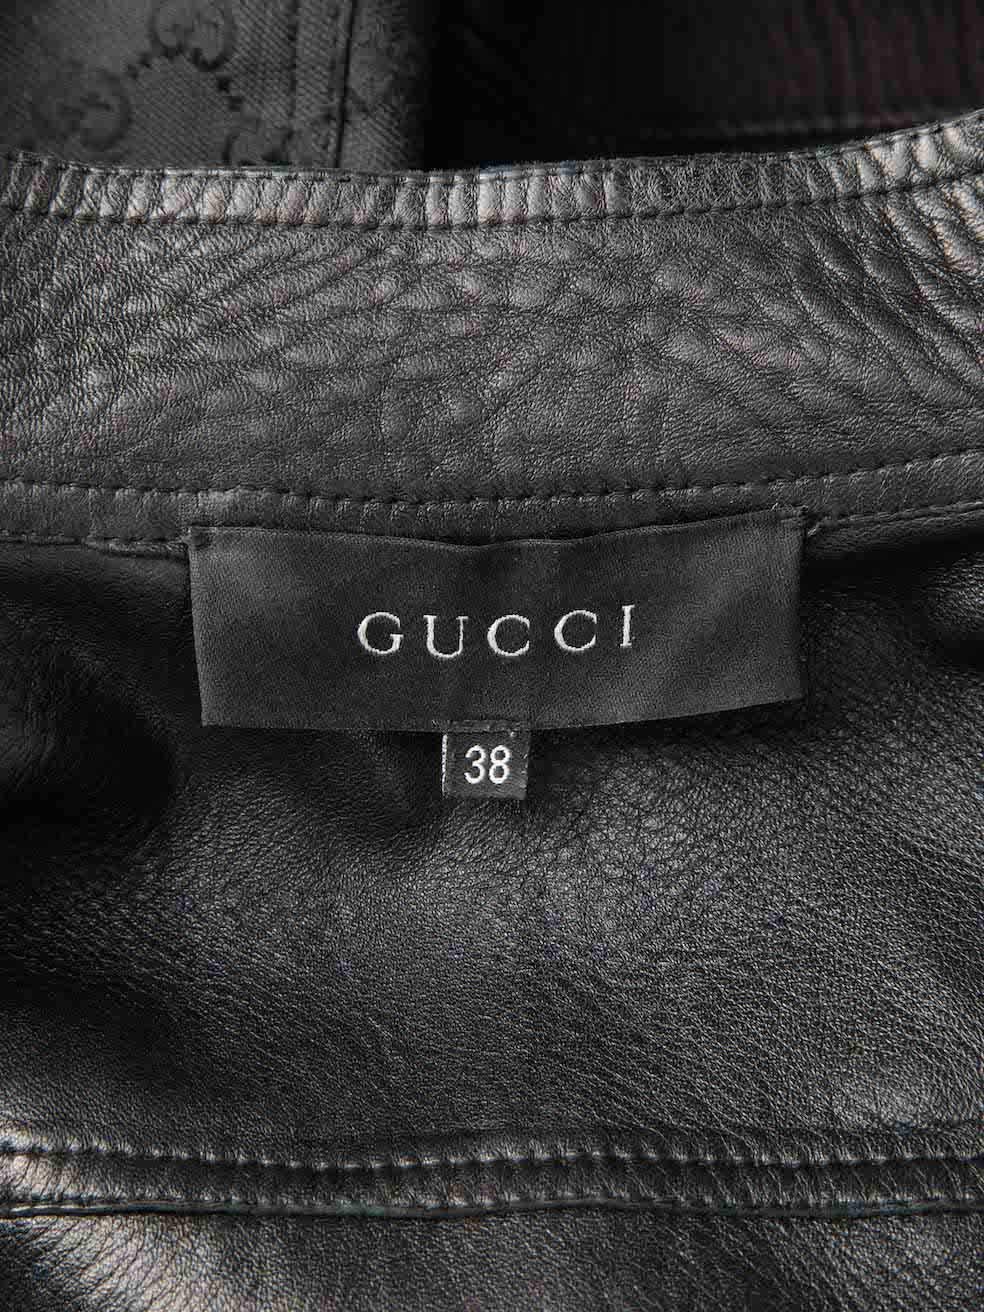 Gucci Women's Black GG Logo Print Biker Leather Jacket 1